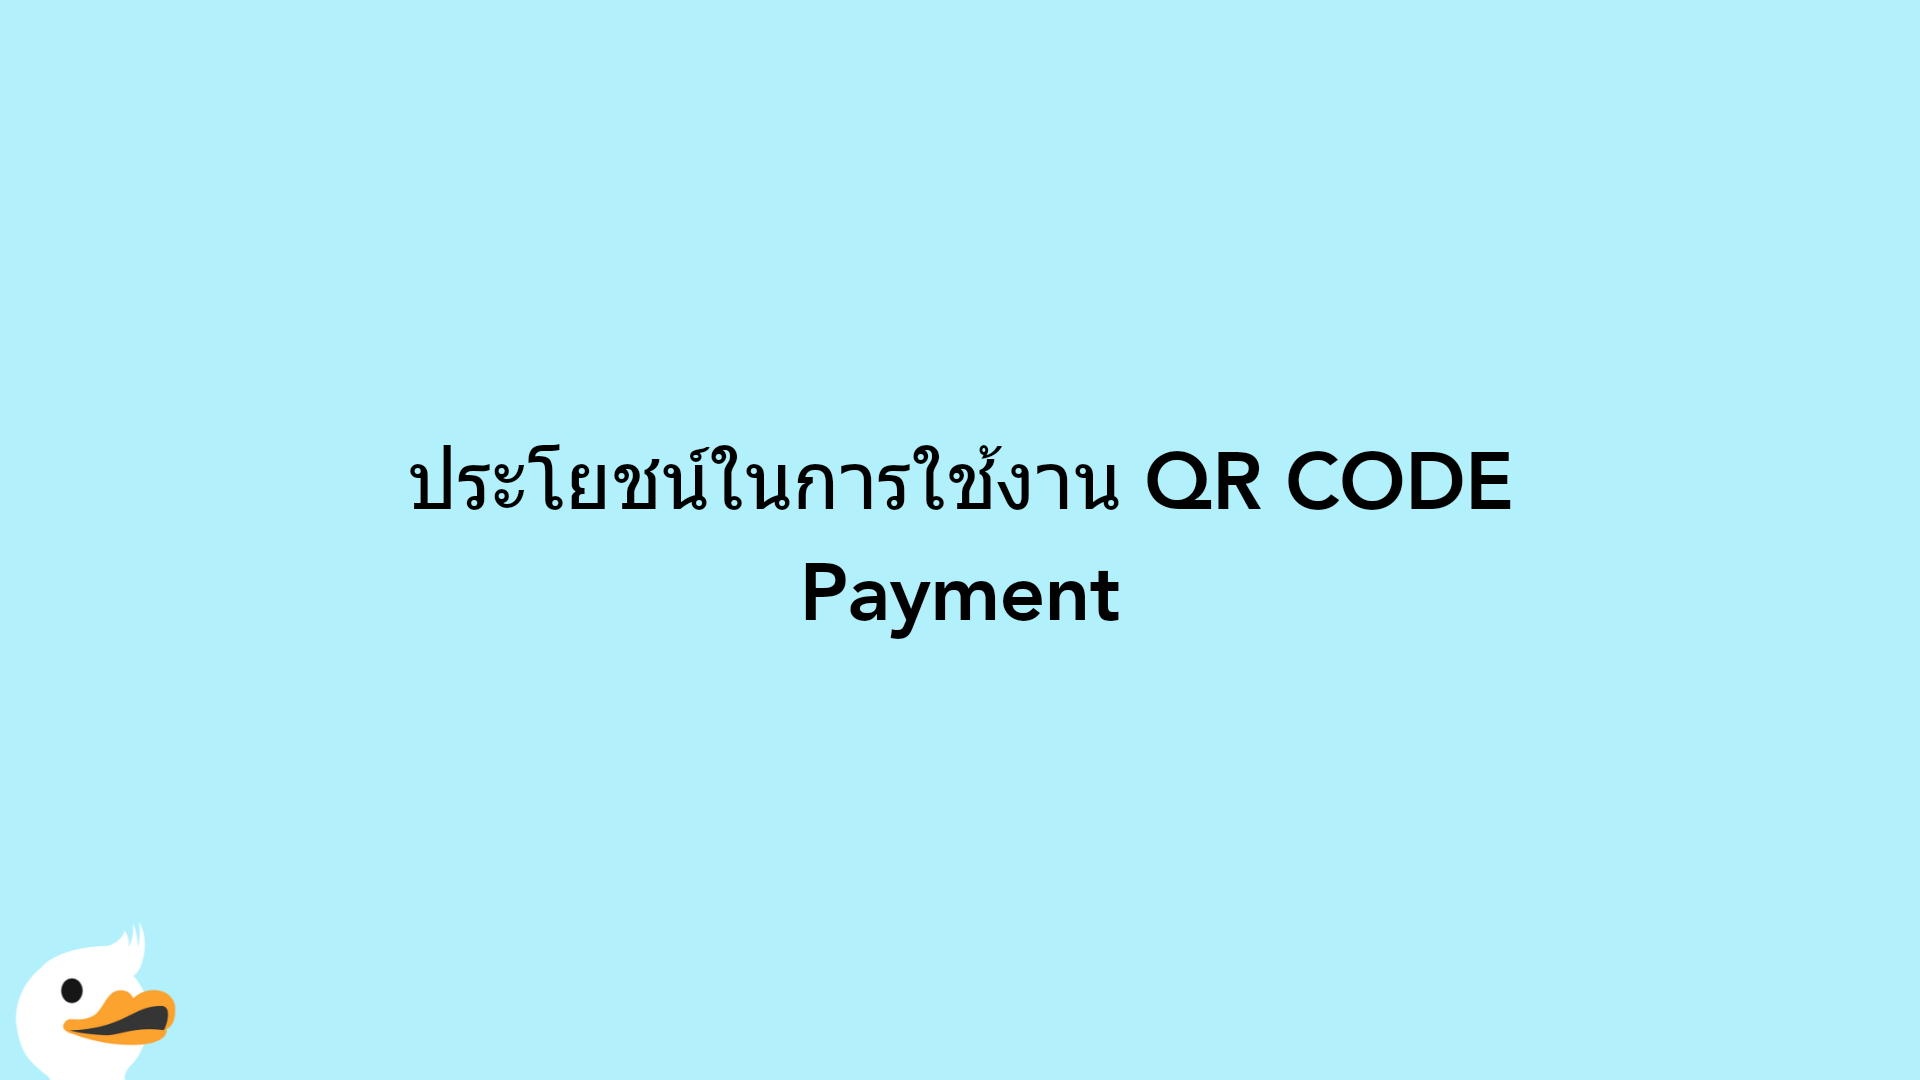 ประโยชน์ในการใช้งาน QR CODE Payment